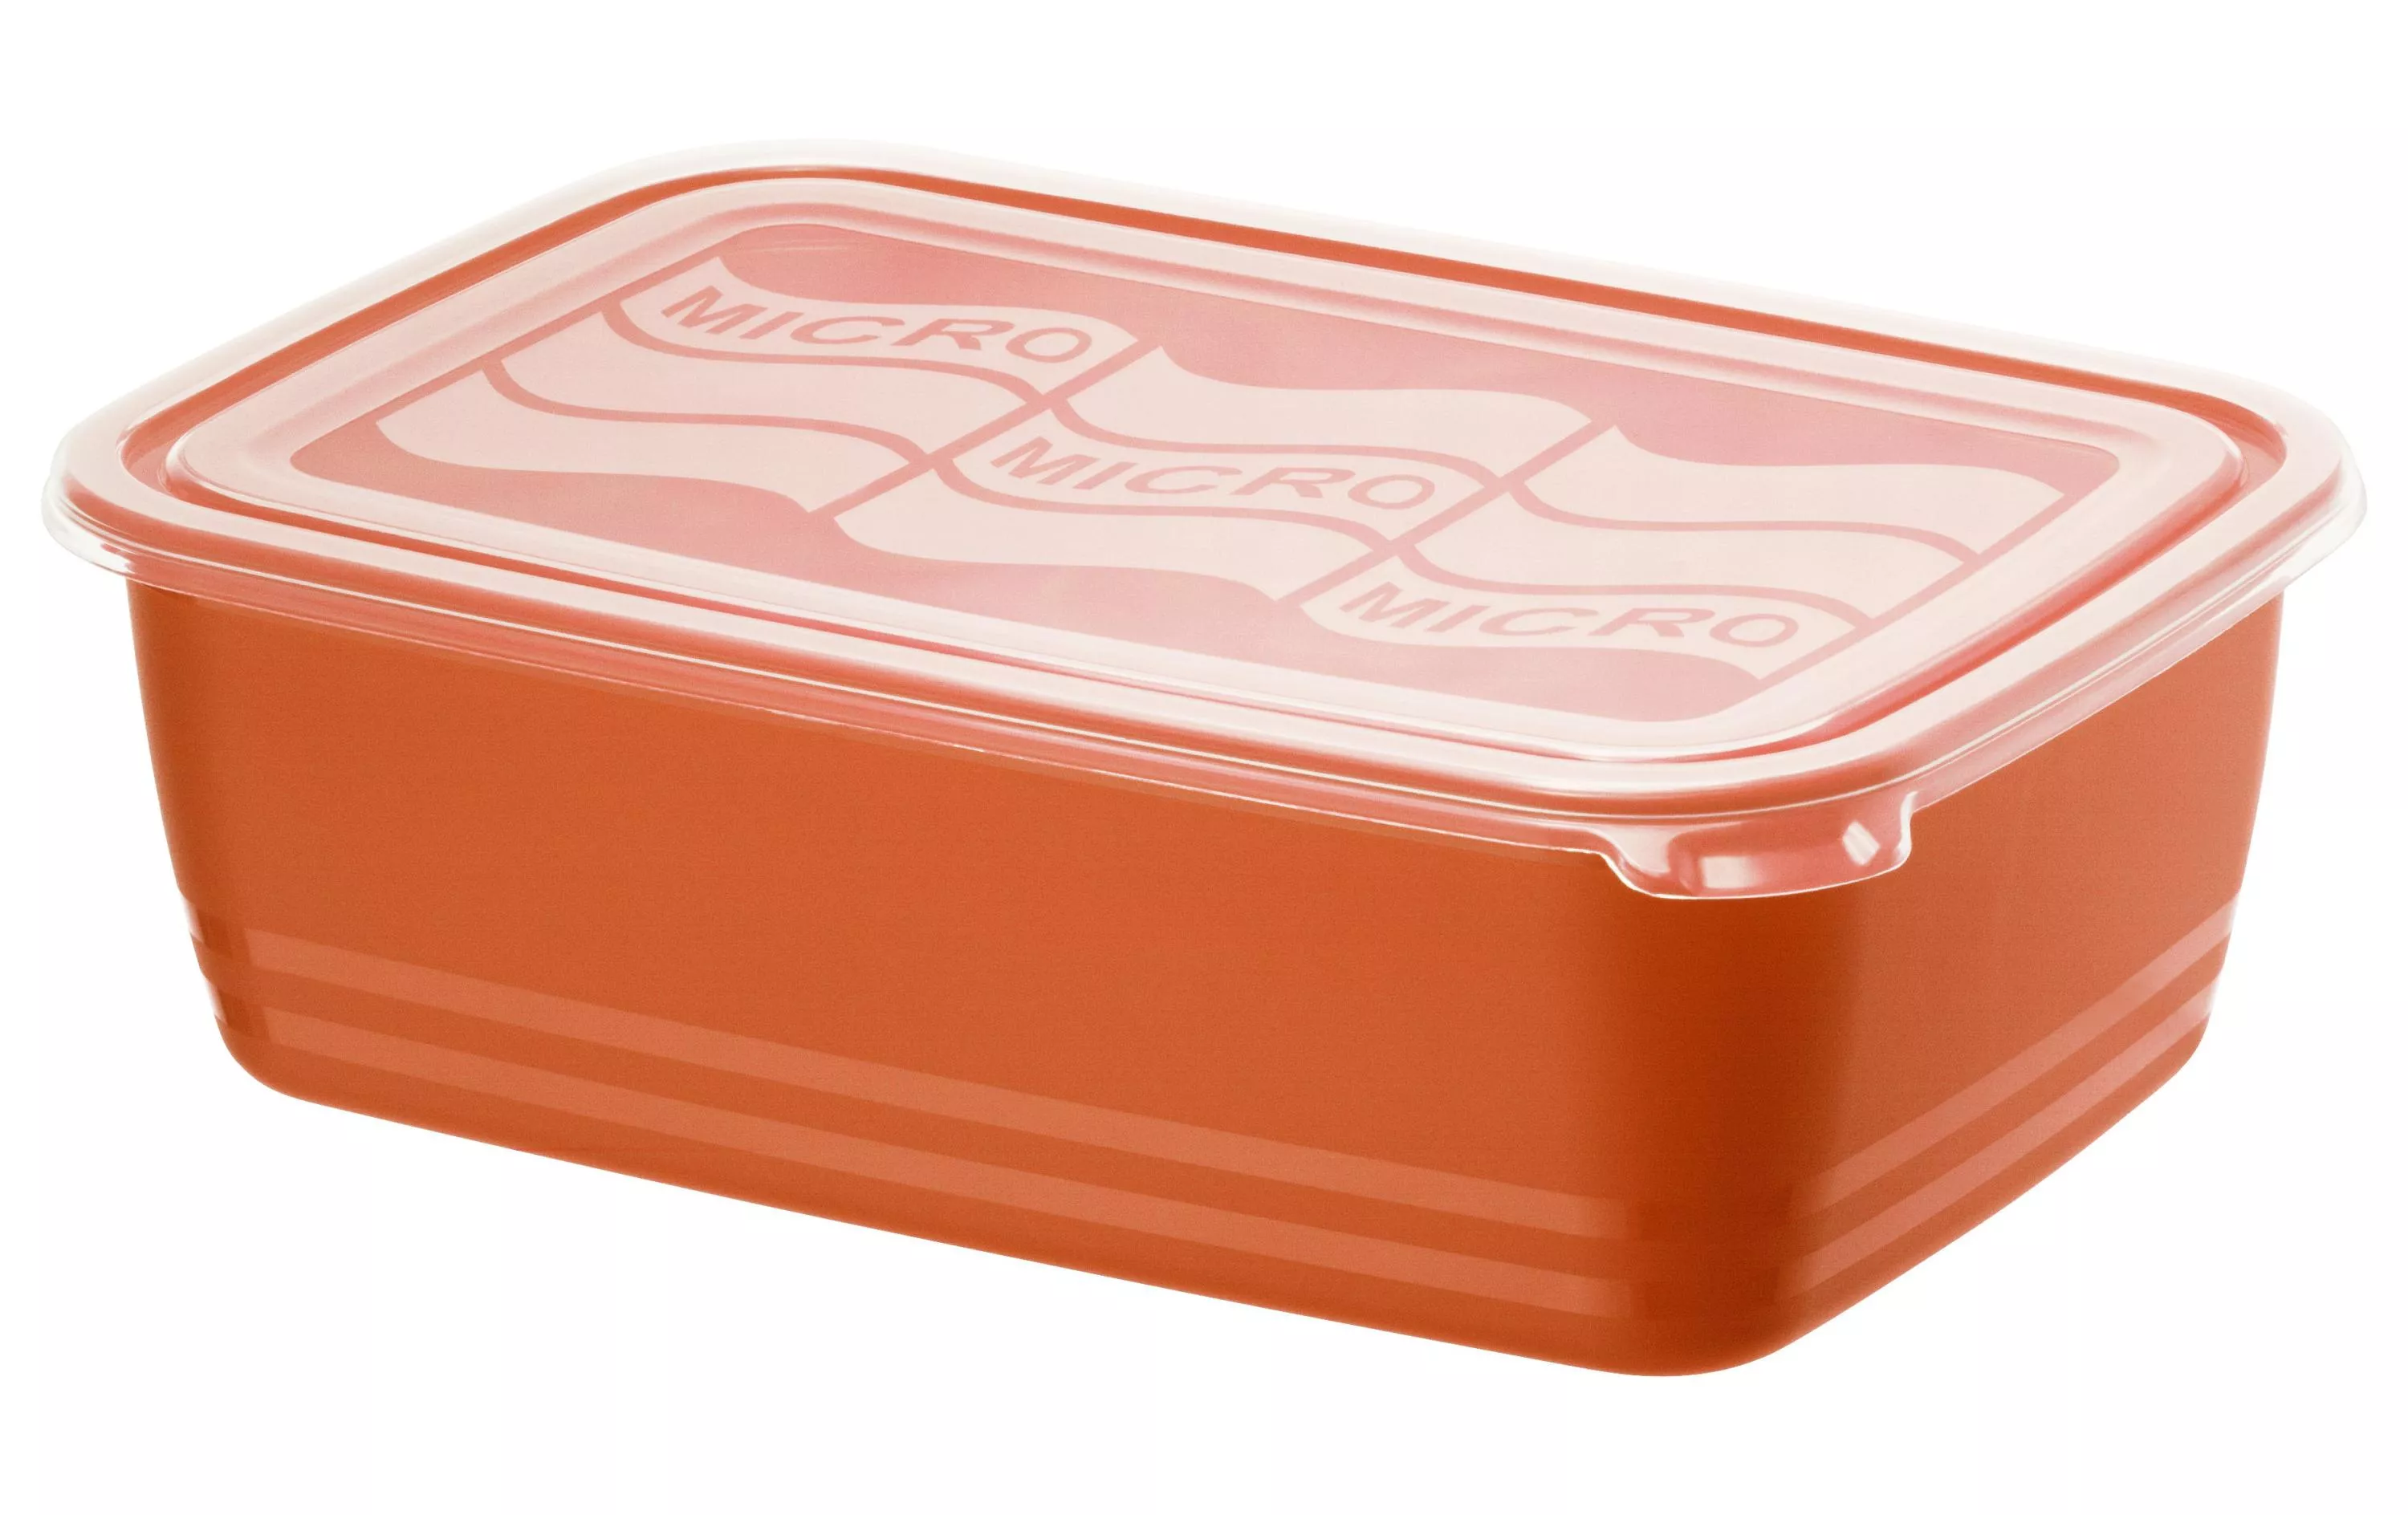 Microwave Tin Eco 3.7 litri, Rosso Papaya